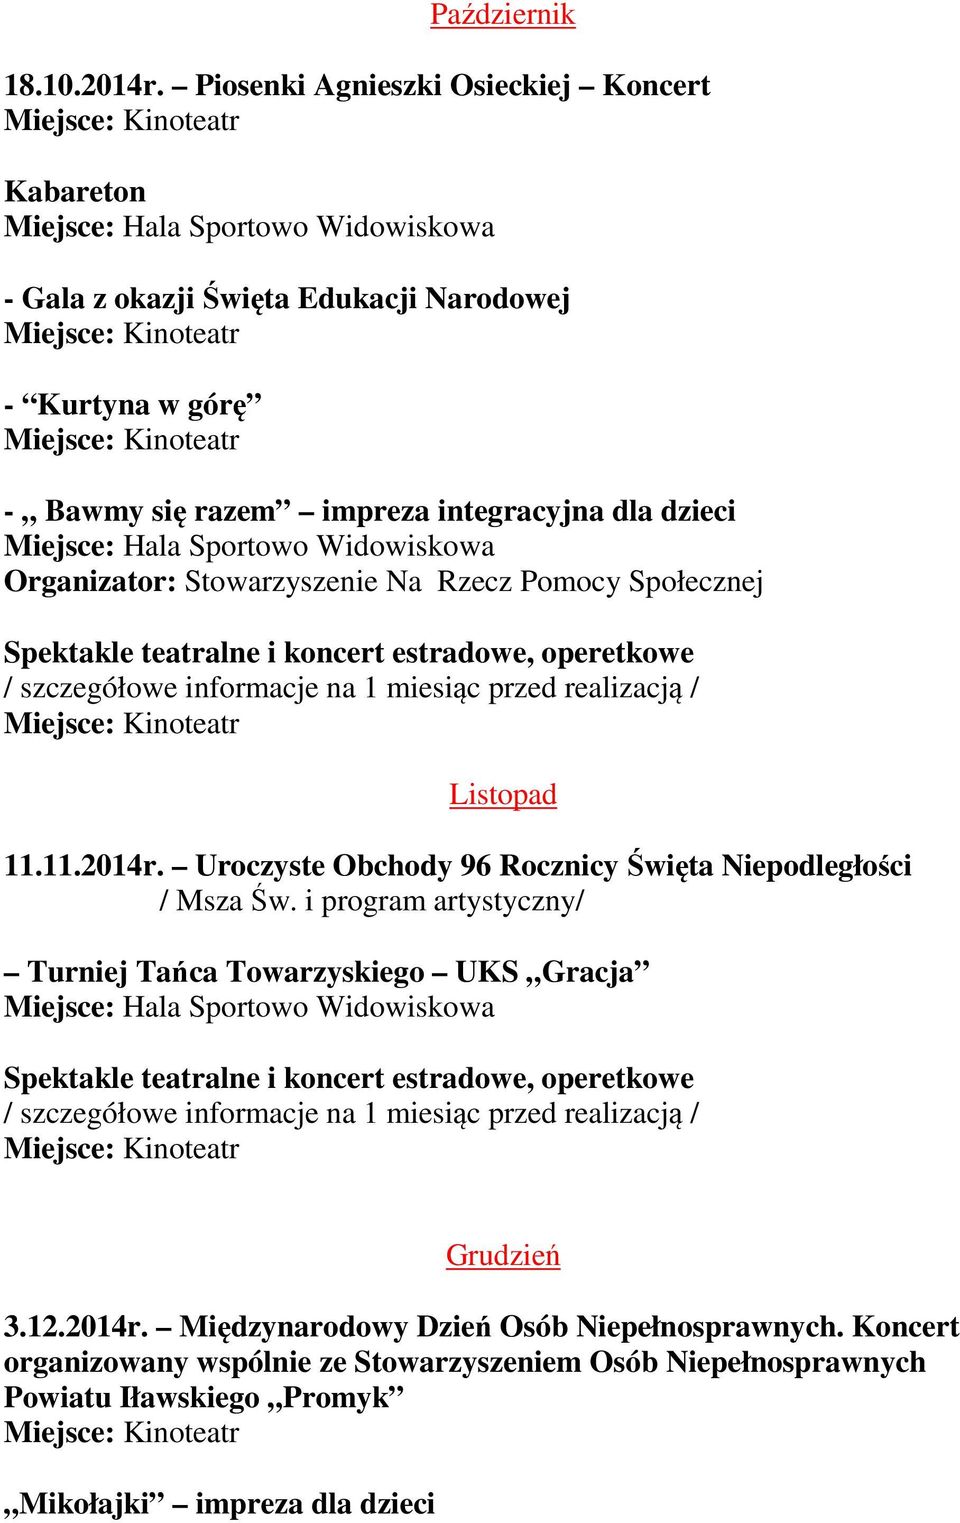 integracyjna dla dzieci Organizator: Stowarzyszenie Na Rzecz Pomocy Społecznej Listopad 11.11.2014r.